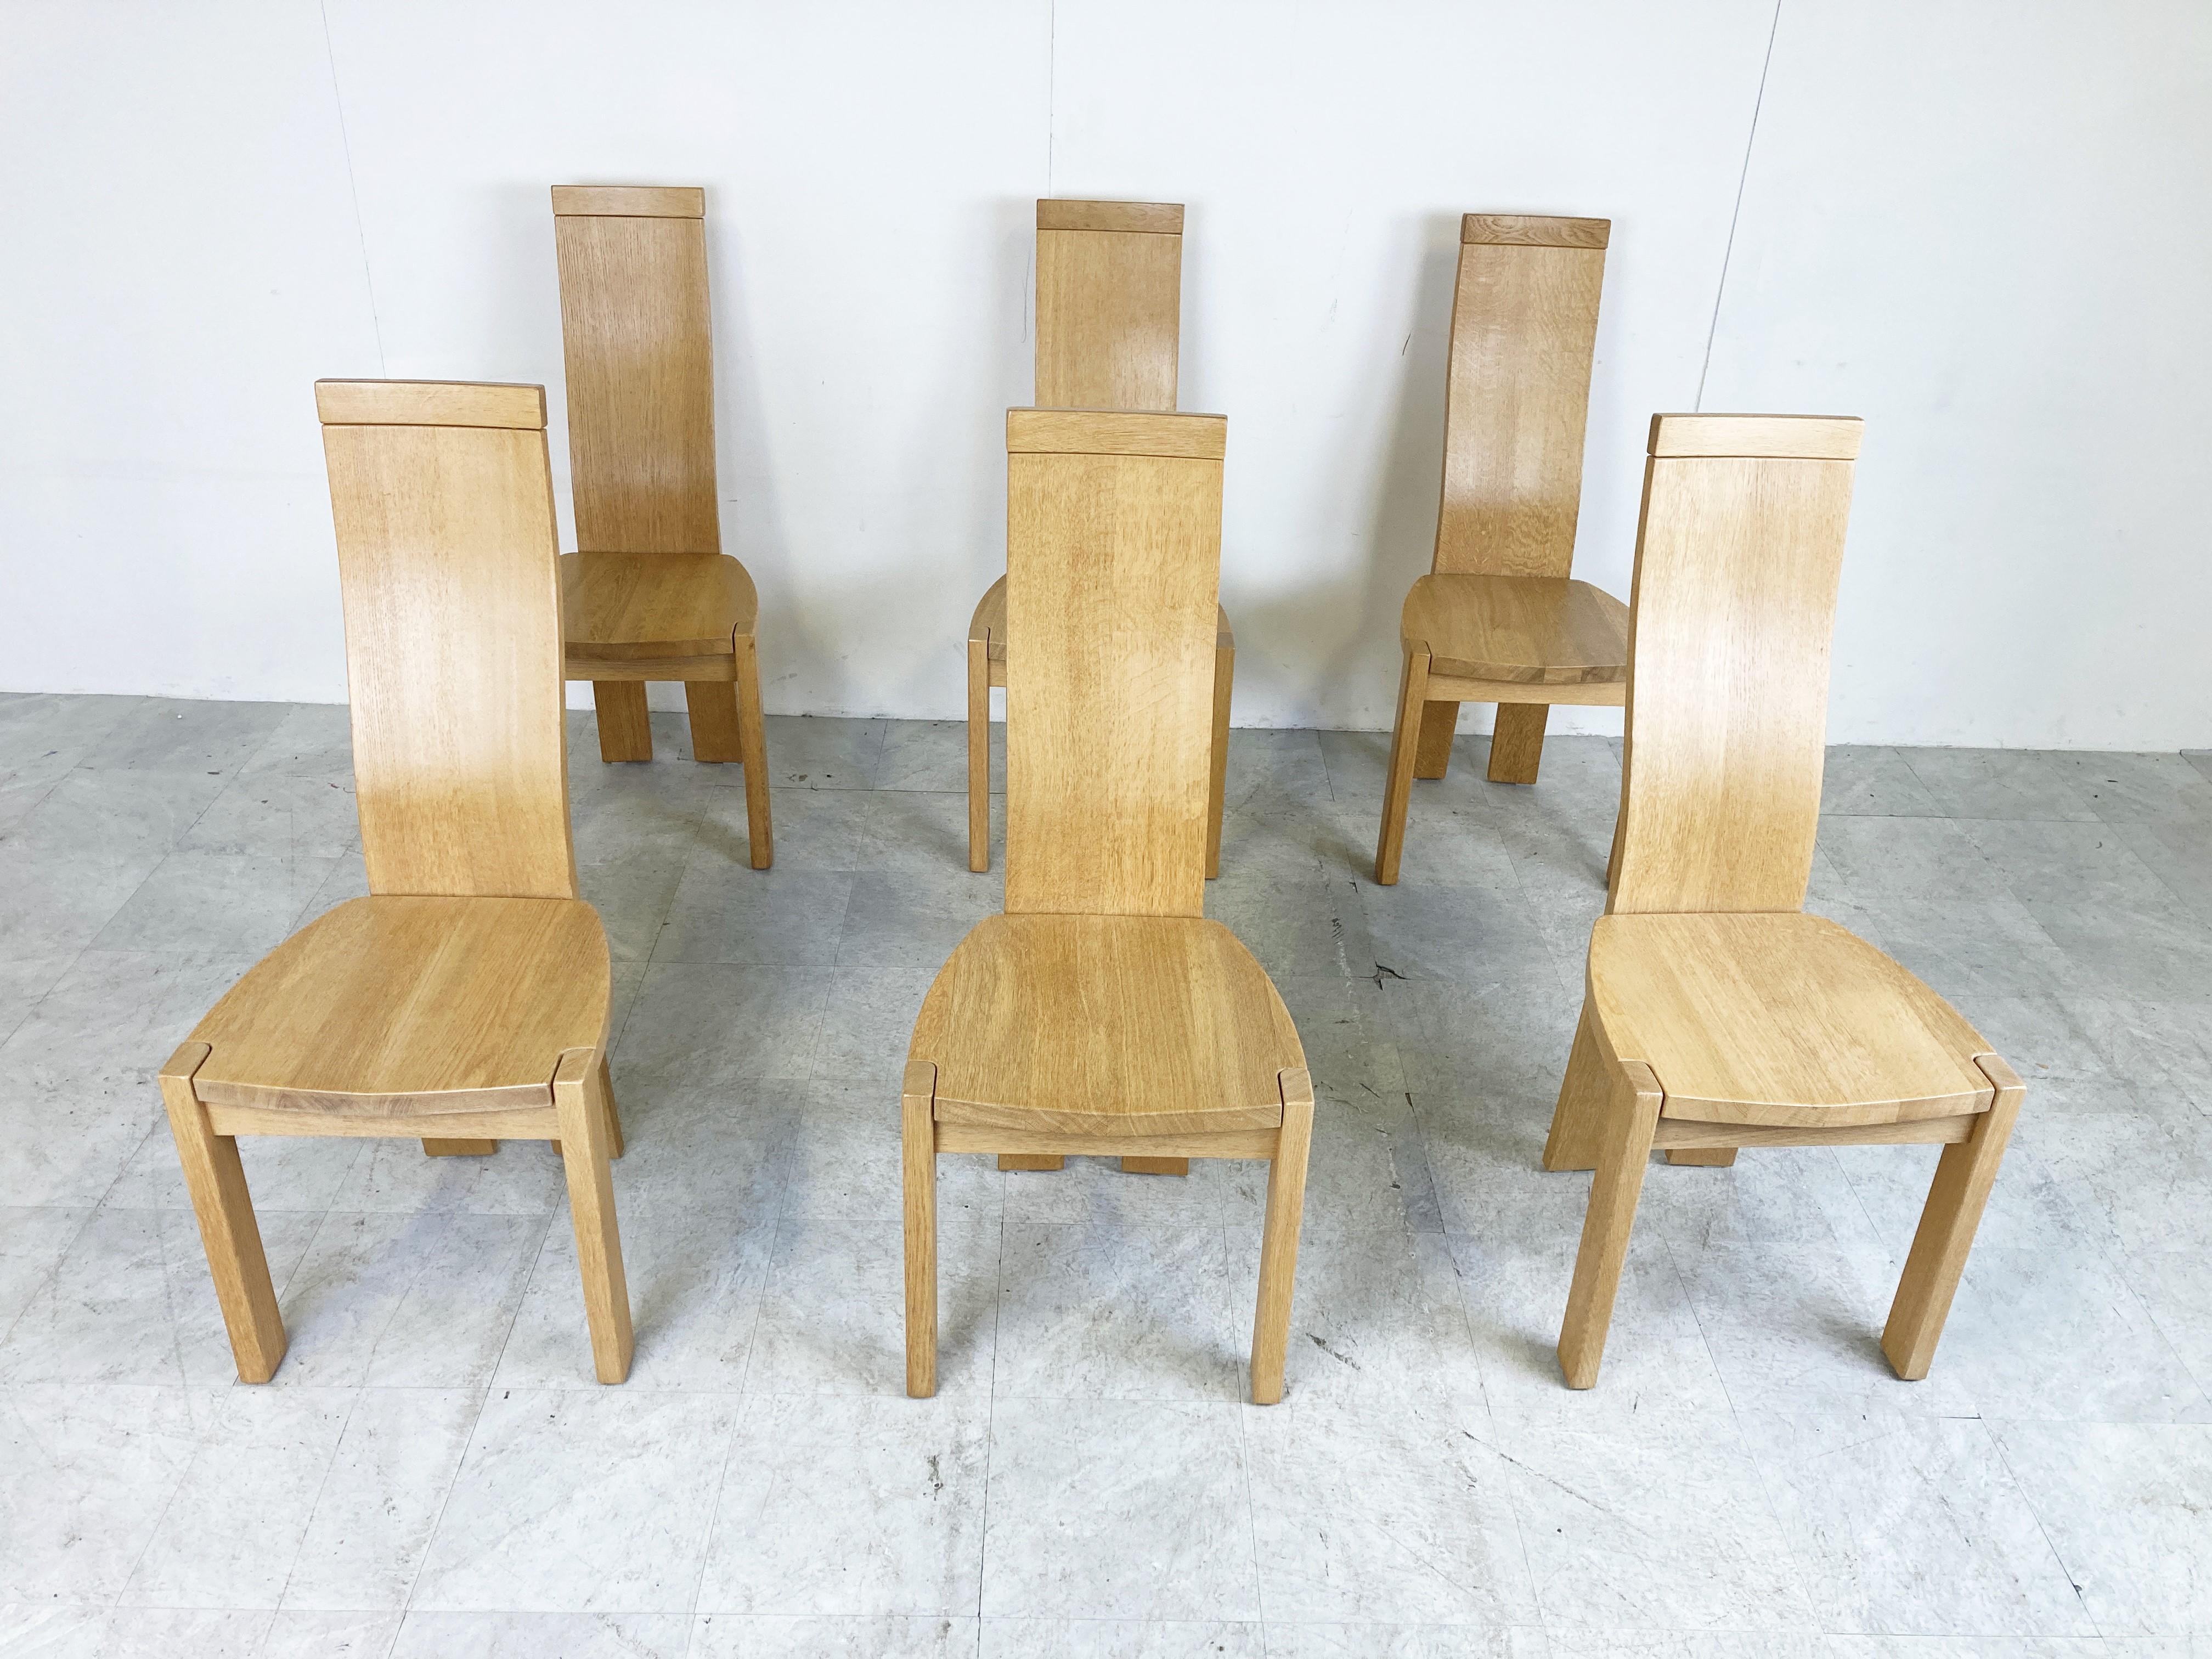 Chaises de salle à manger à haut dossier, élégantes et sculpturales, créées par Vanden Berghe Pauvers.

Très bon état.

Dimensions :
Hauteur : 108cm/42.51